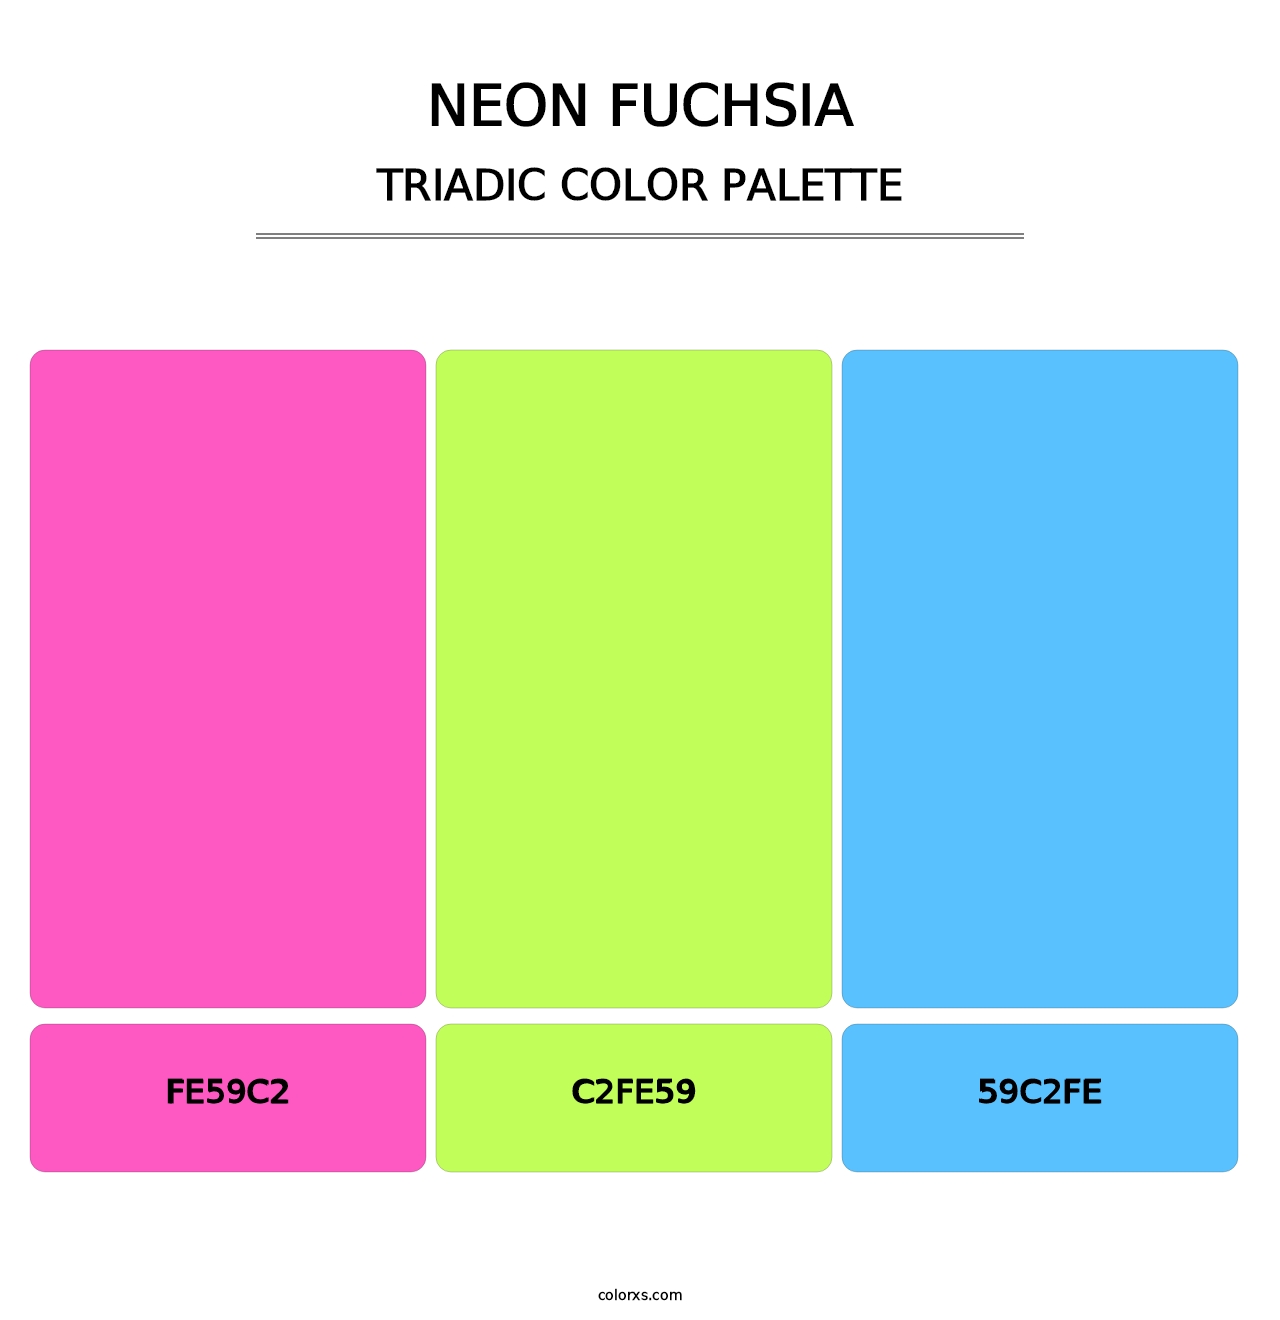 Neon Fuchsia - Triadic Color Palette